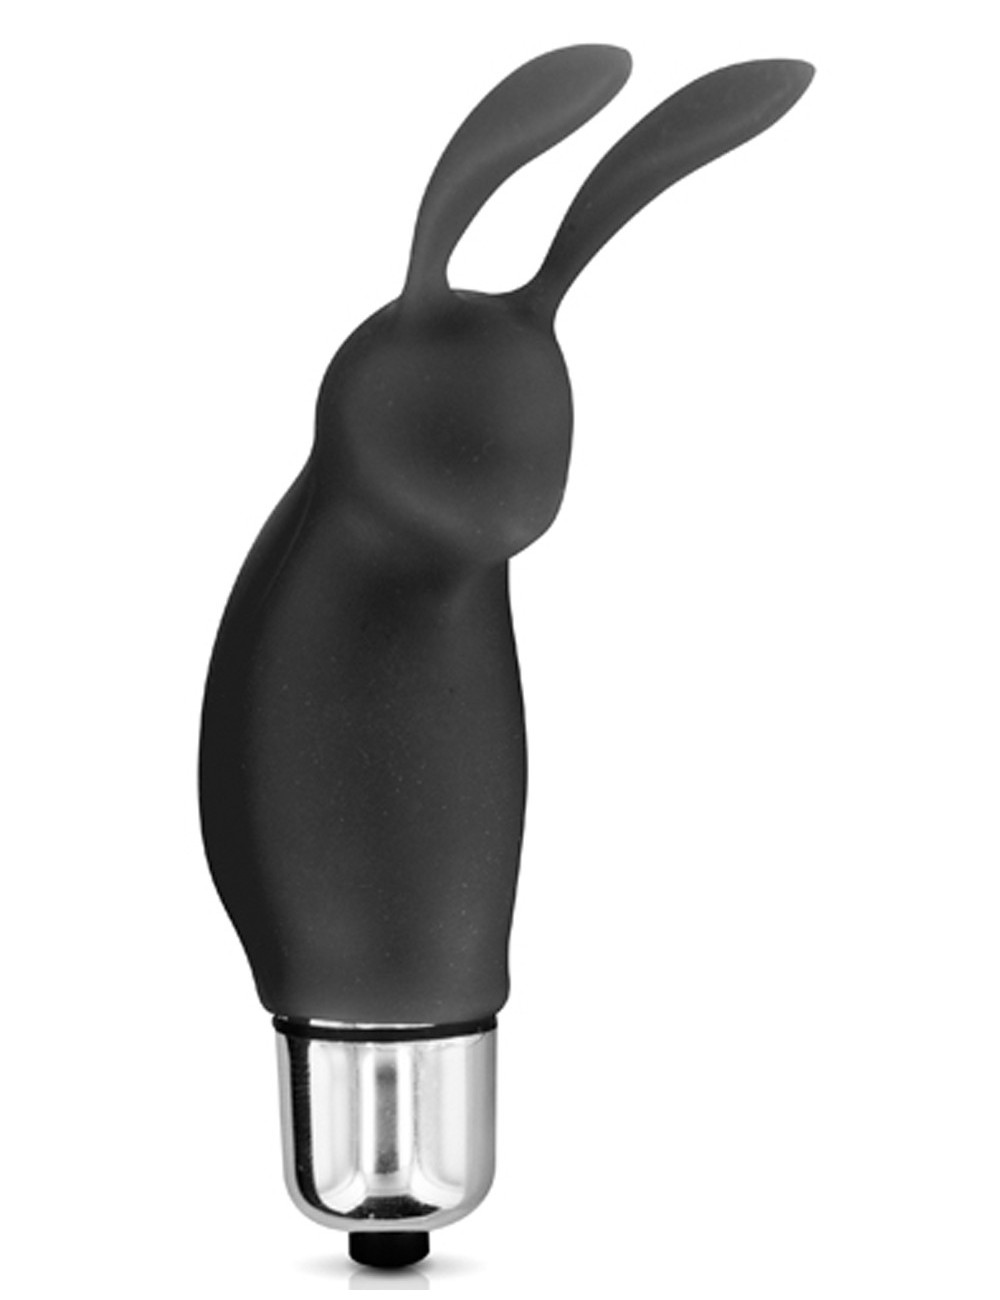 Stimulateur de clitoris vibrant noir rabbit - CC5730010010